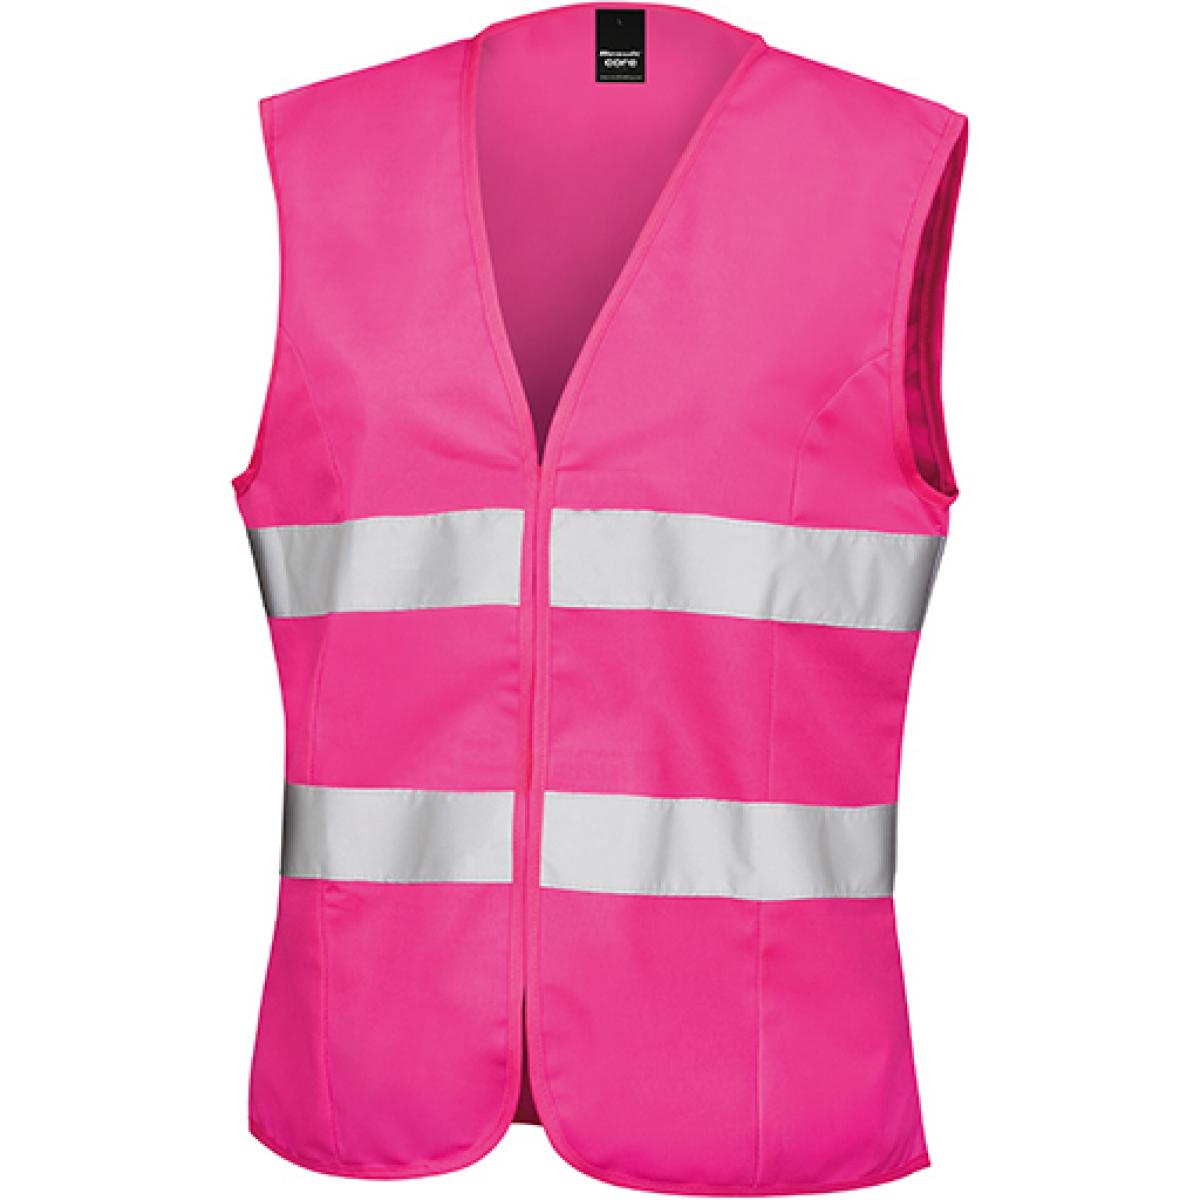 Hersteller: Result Core Herstellernummer: R334F Artikelbezeichnung: Damen Sicherheitsweste High Viz Tabard / leicht figurbetont Farbe: Fluorescent Pink